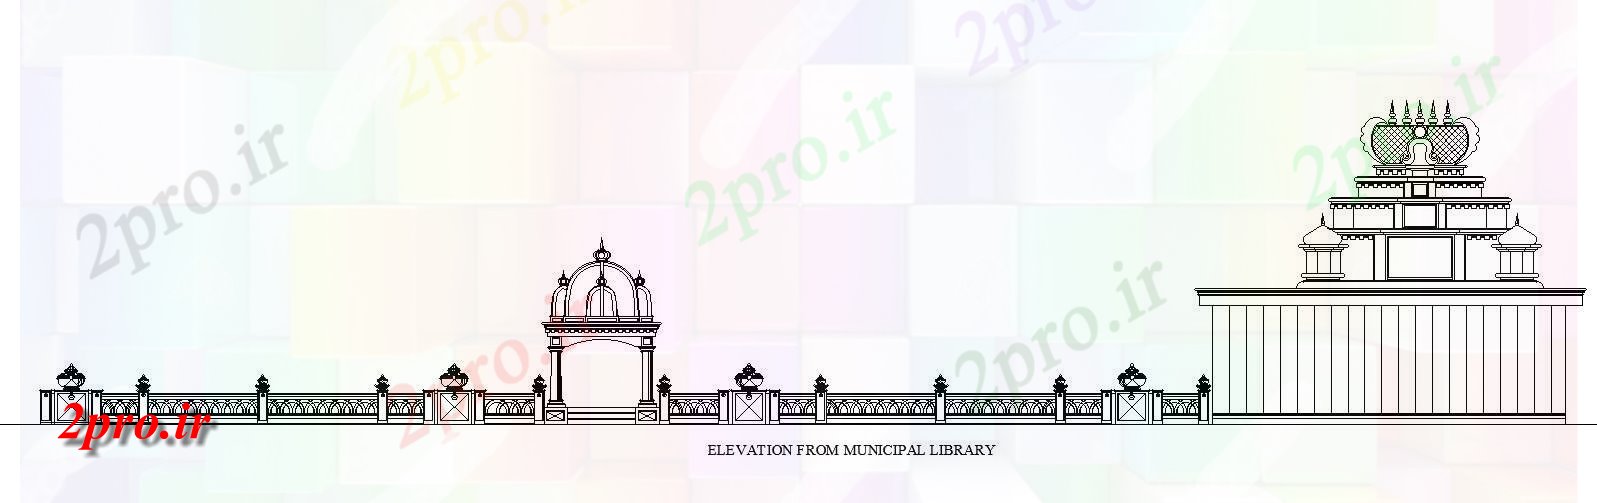 دانلود نقشه کلیسا - معبد - مکان مذهبی نما از کتابخانه معبد شهری طراحی معماری،  در حال حاضر یک   (کد164678)